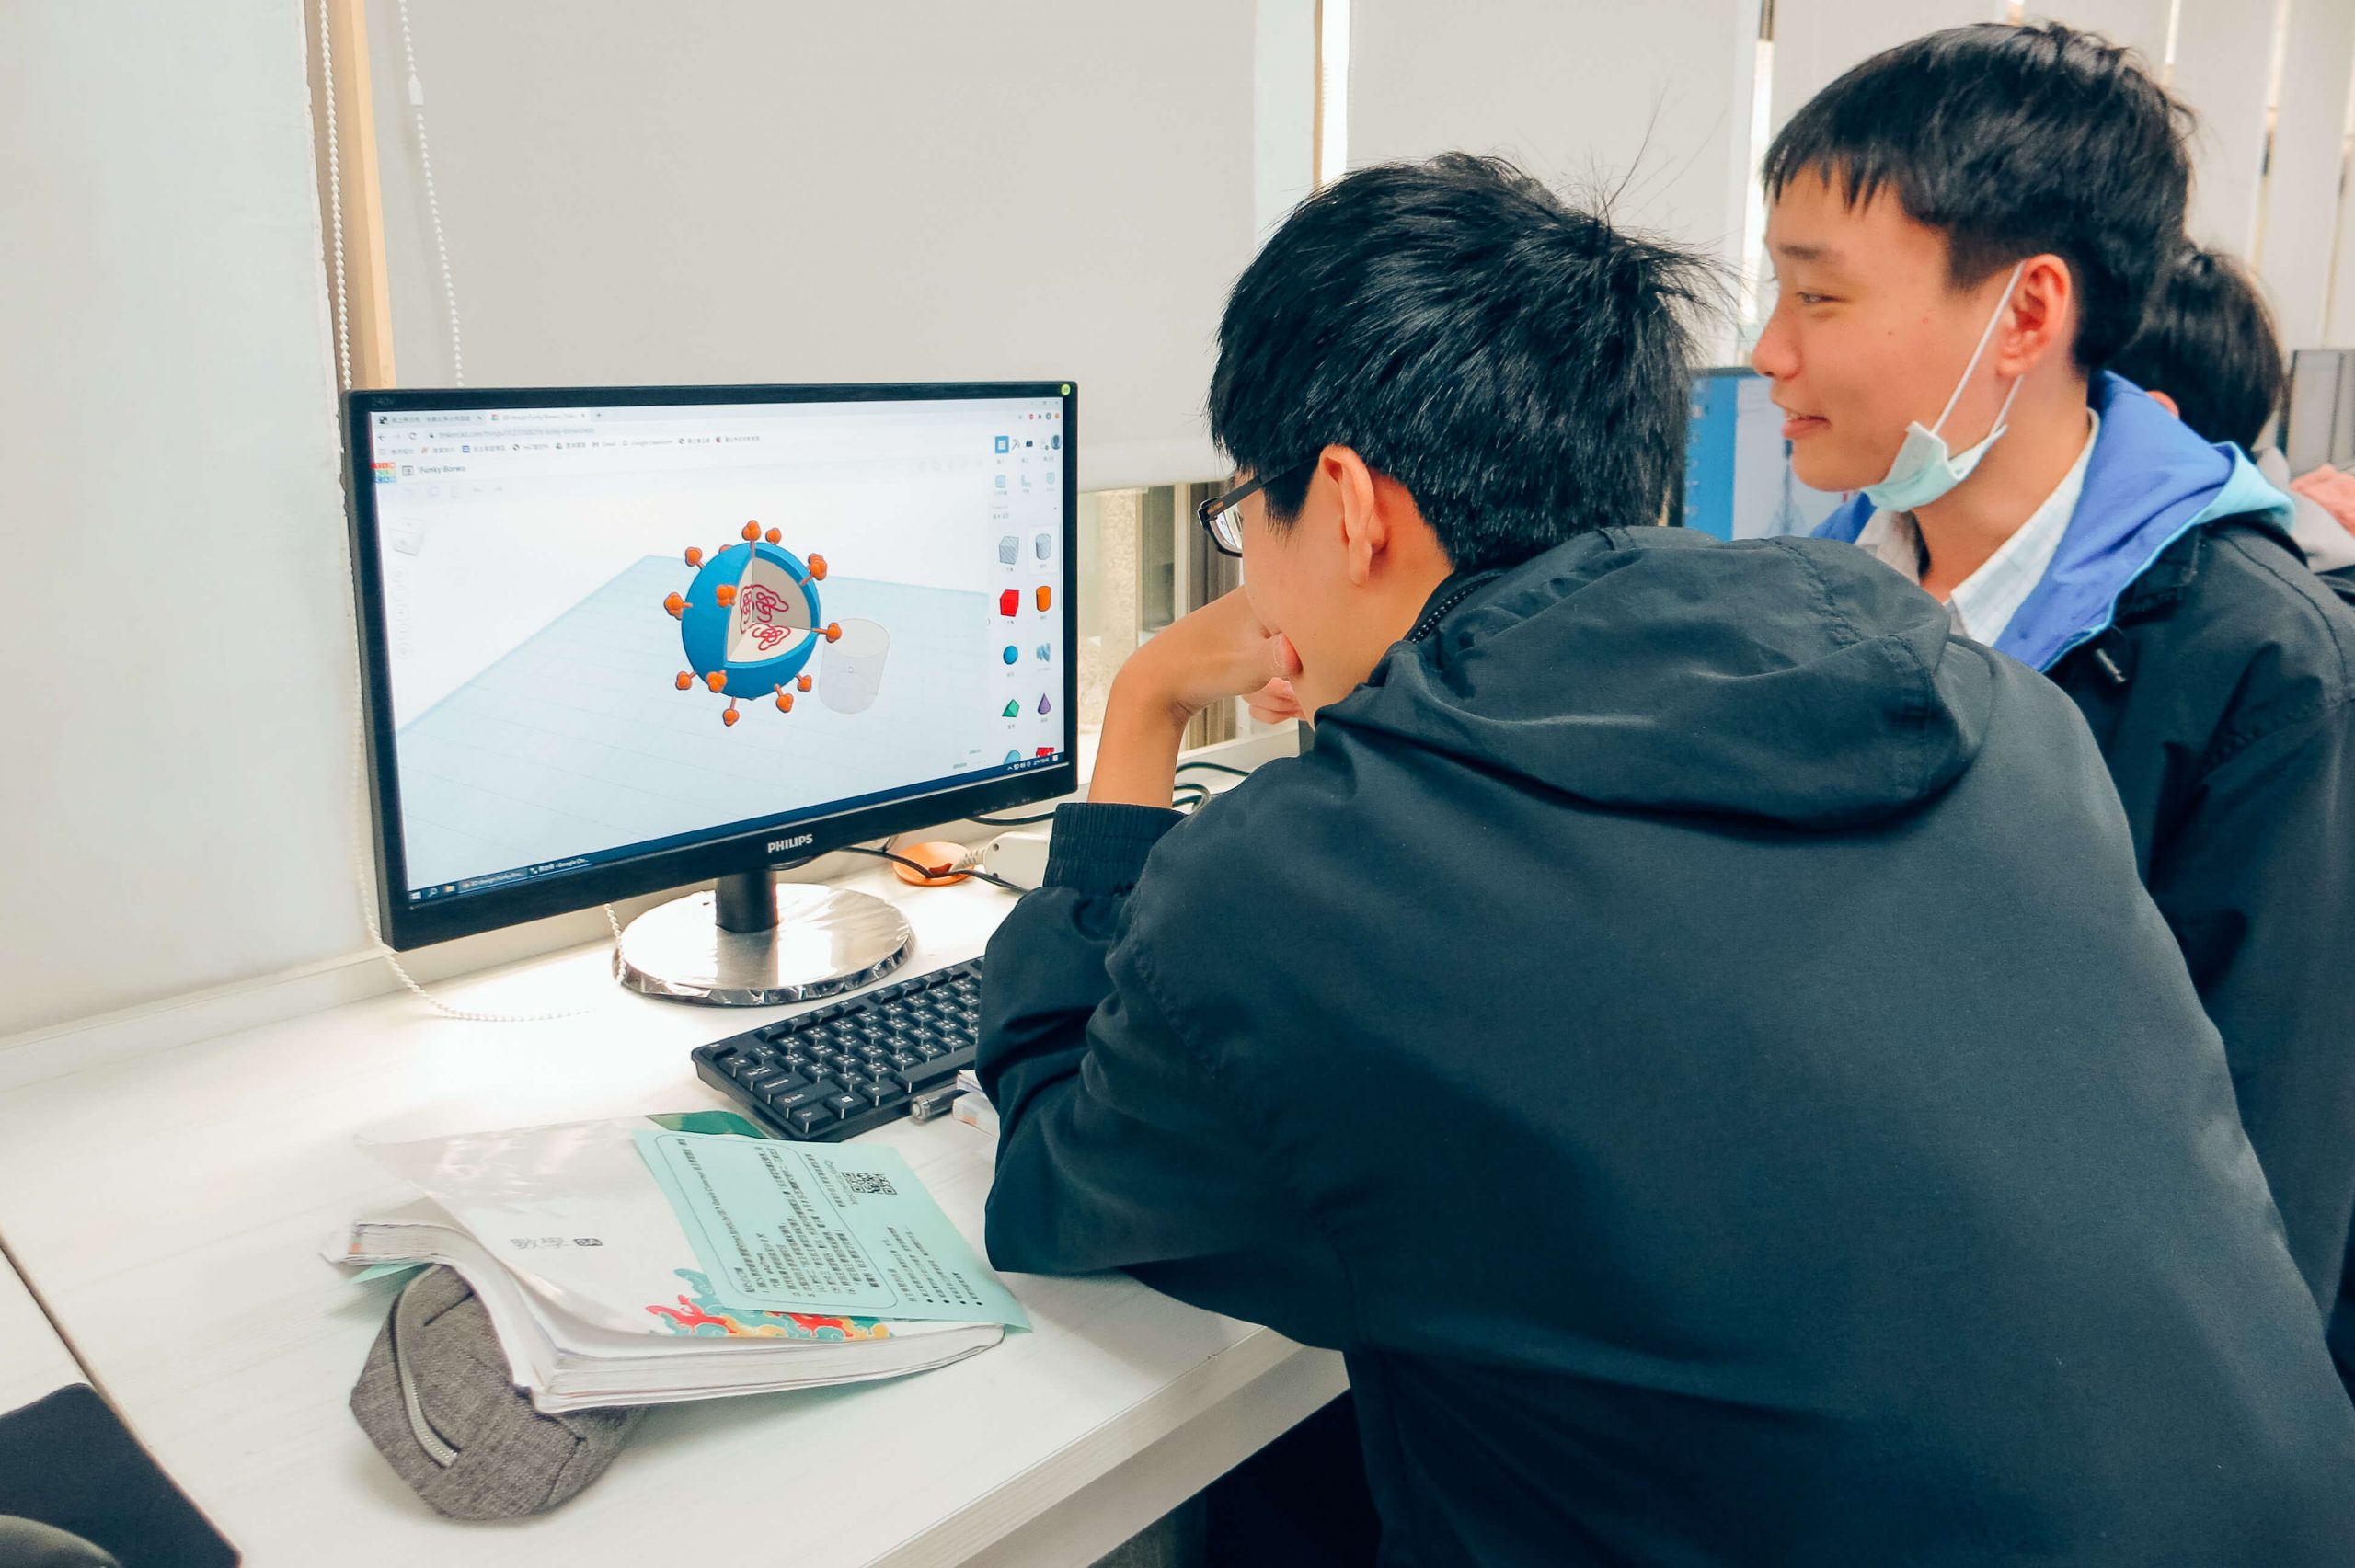 兩位男學生在電腦前操作建模軟體